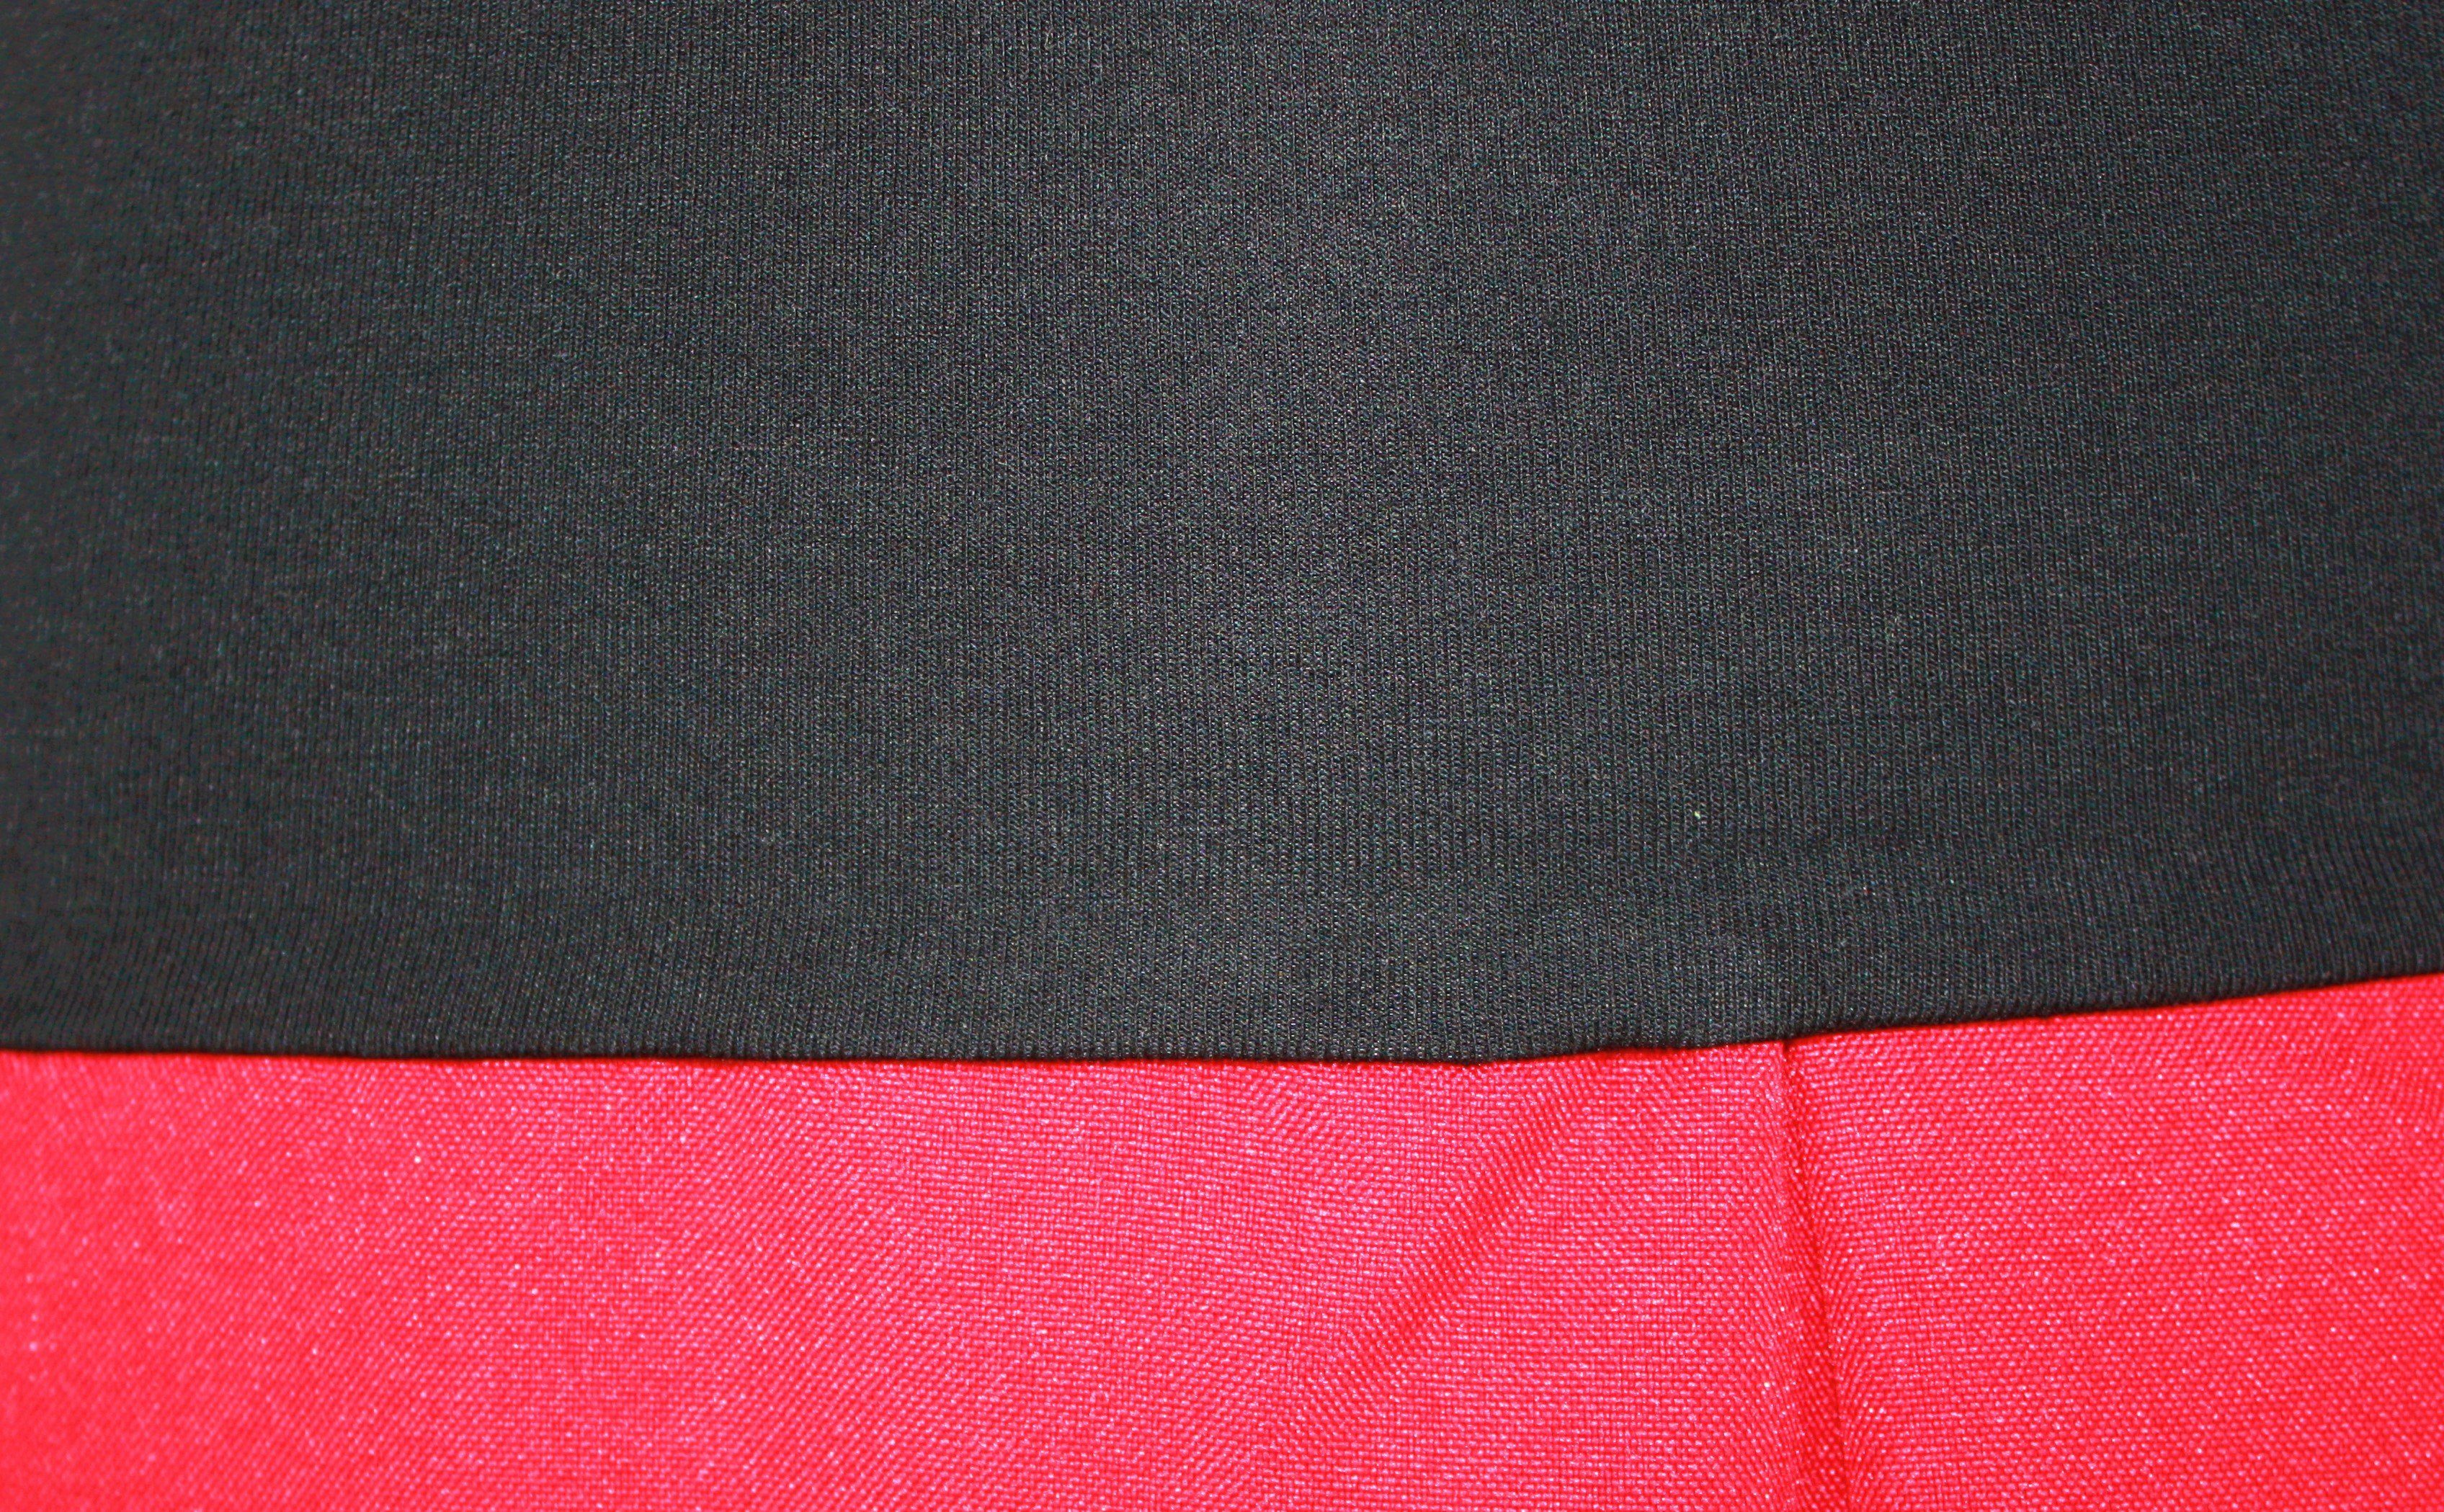 dunkle design A-Linien-Rock Tulpenrock 54cm oder Rot Pink